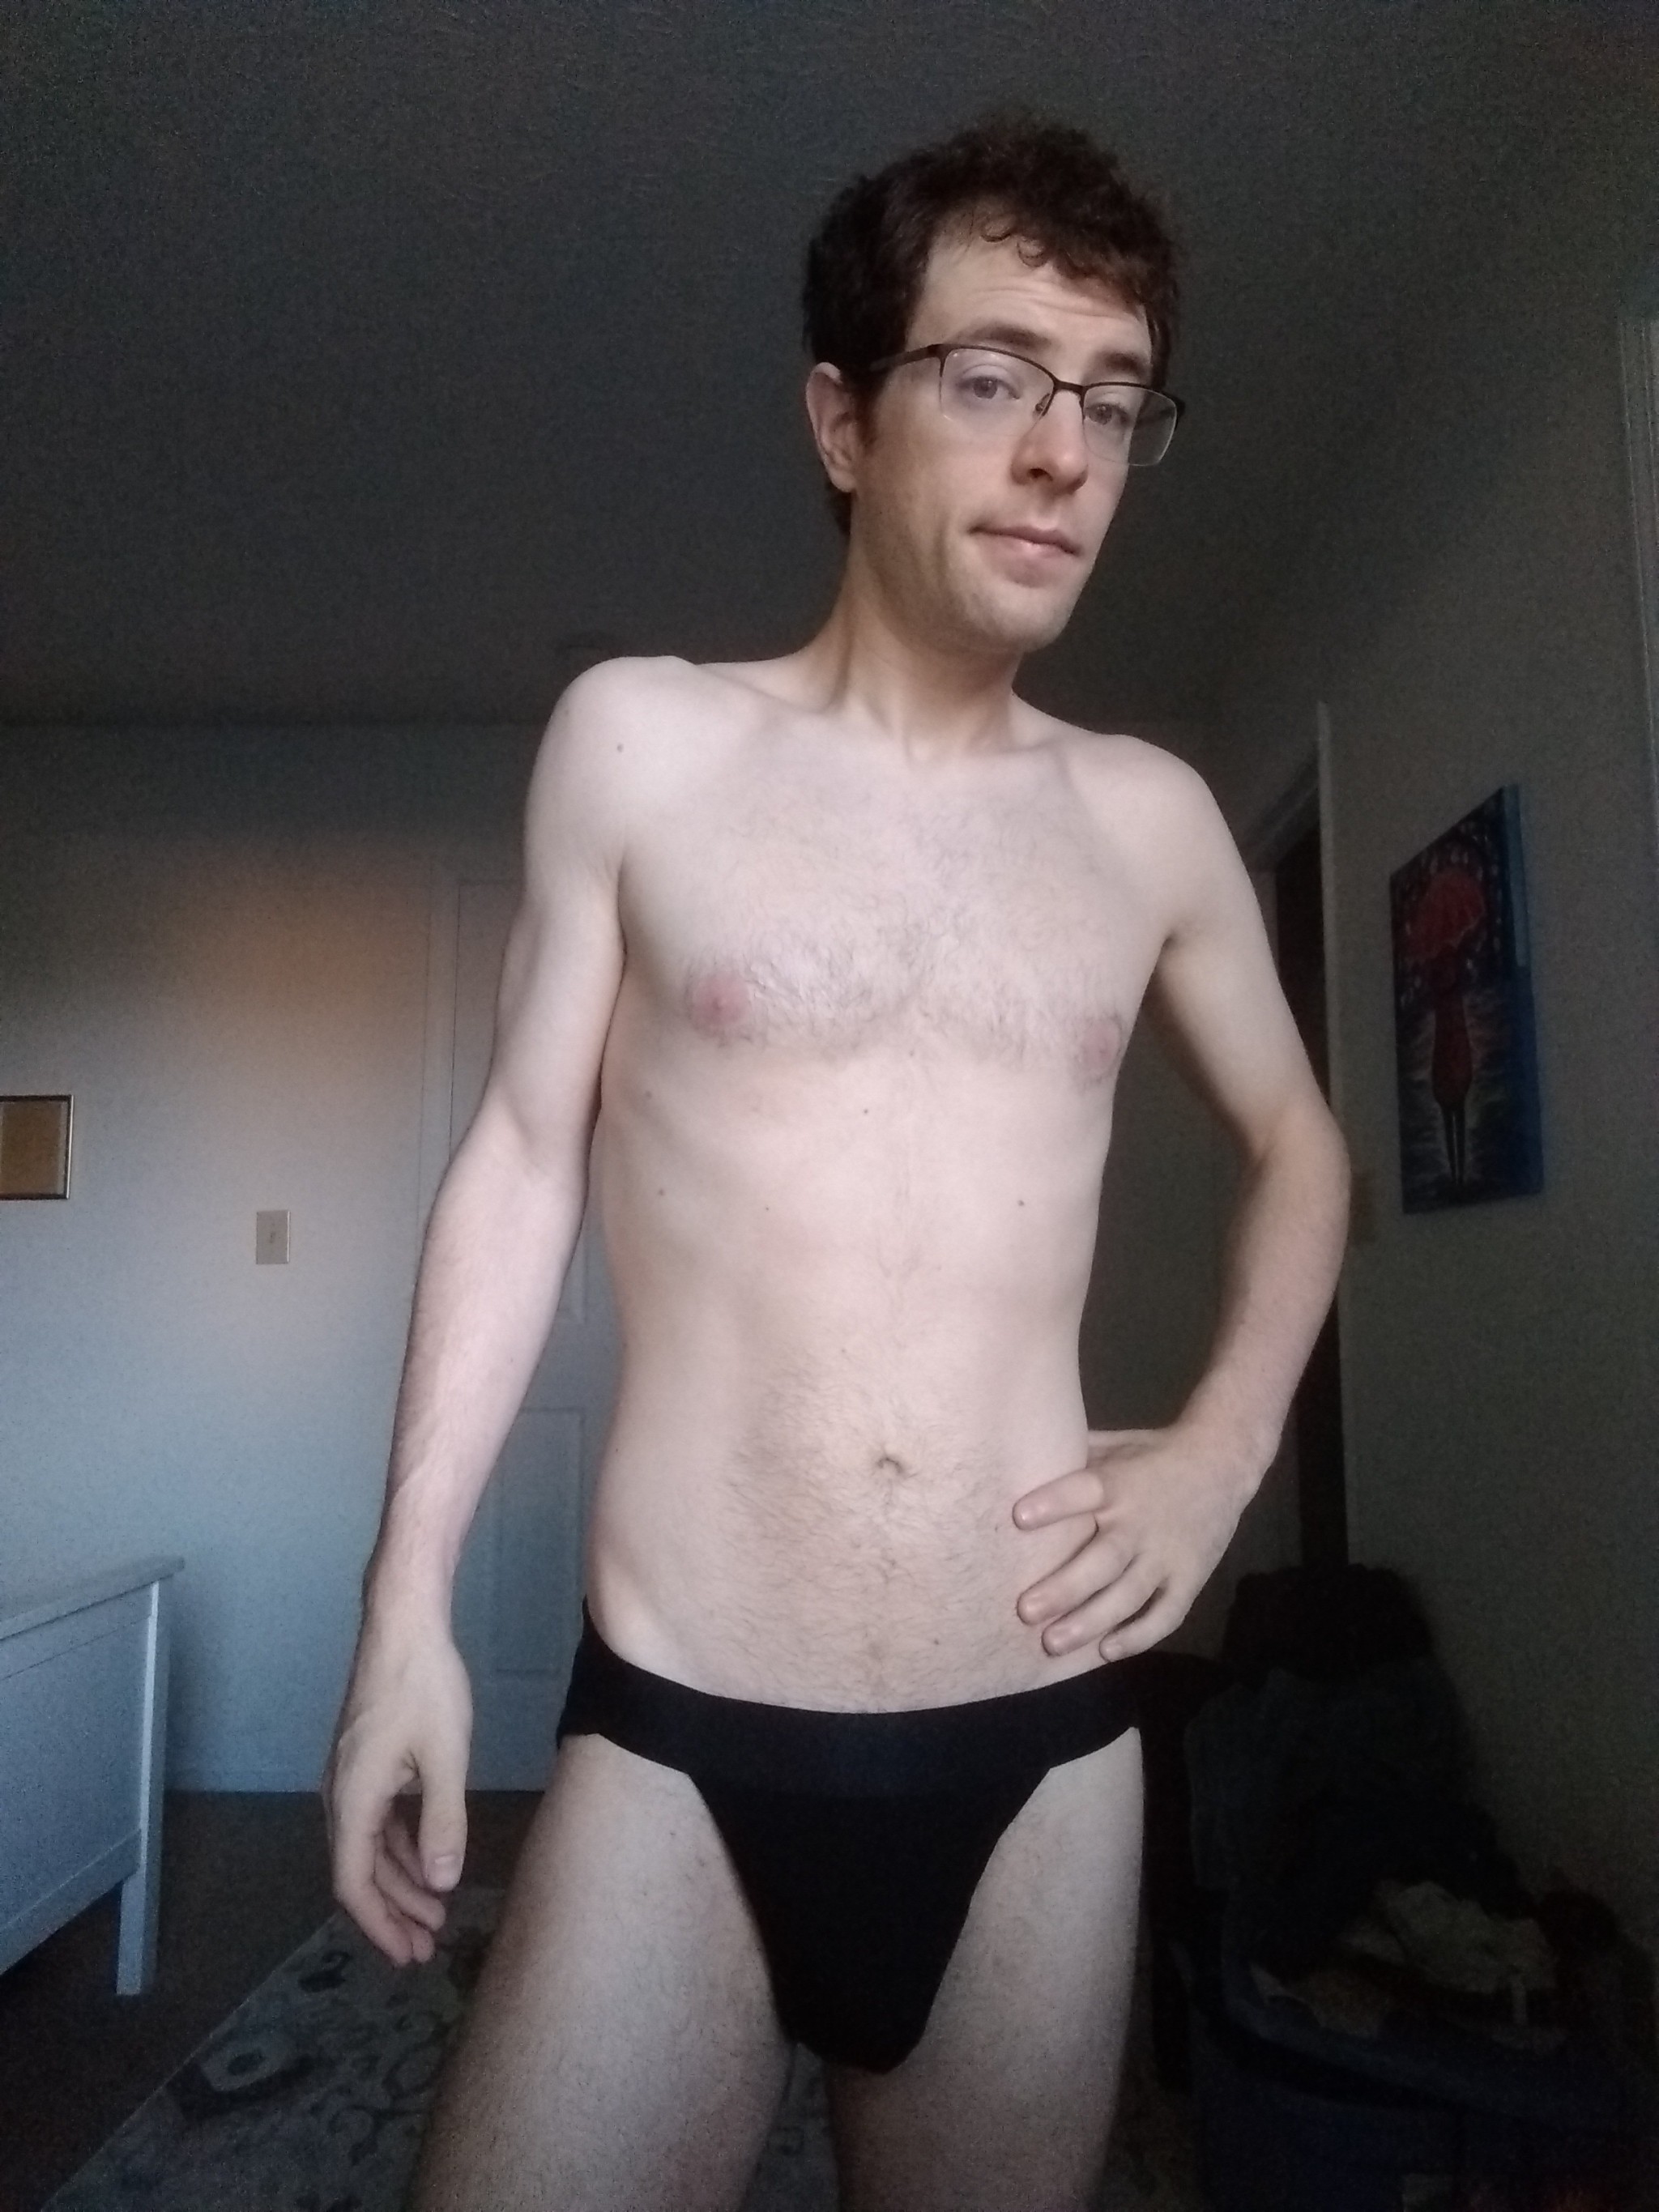 Porn photo bikinithonglover:Morning selfie in basic